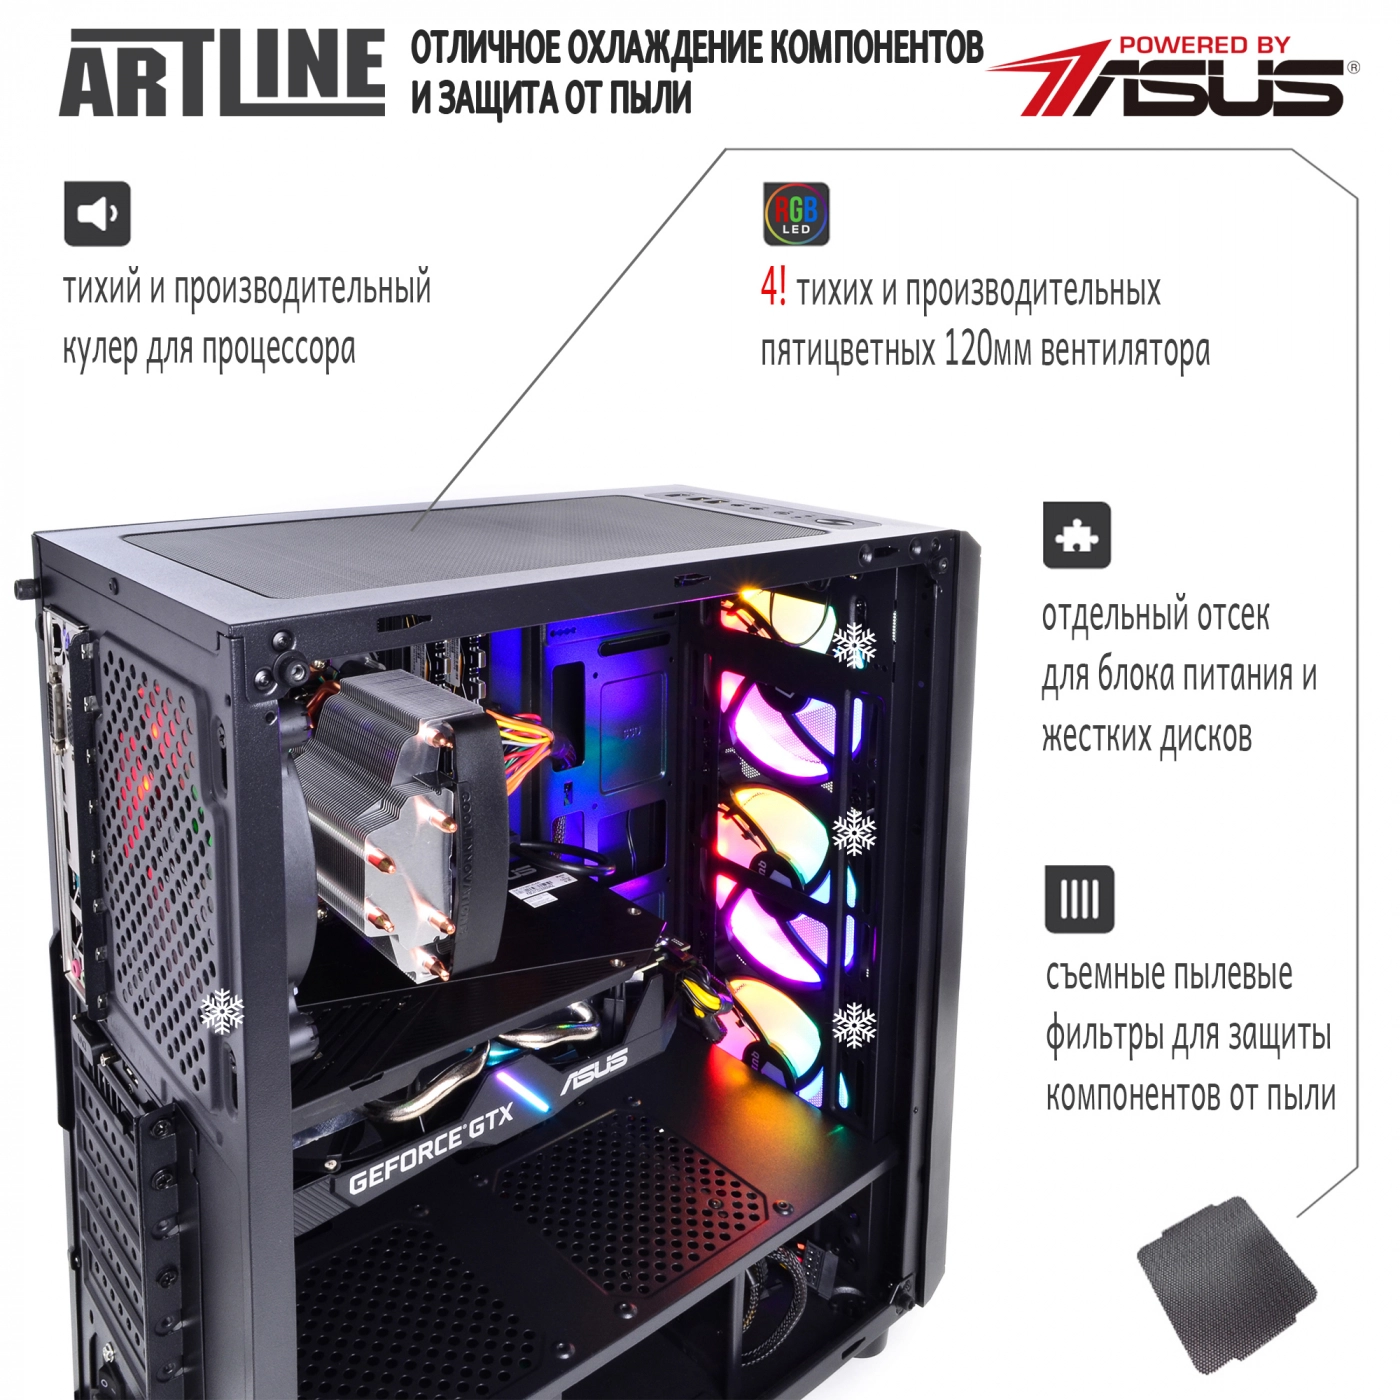 Купить Компьютер ARTLINE Gaming X73v19 - фото 3